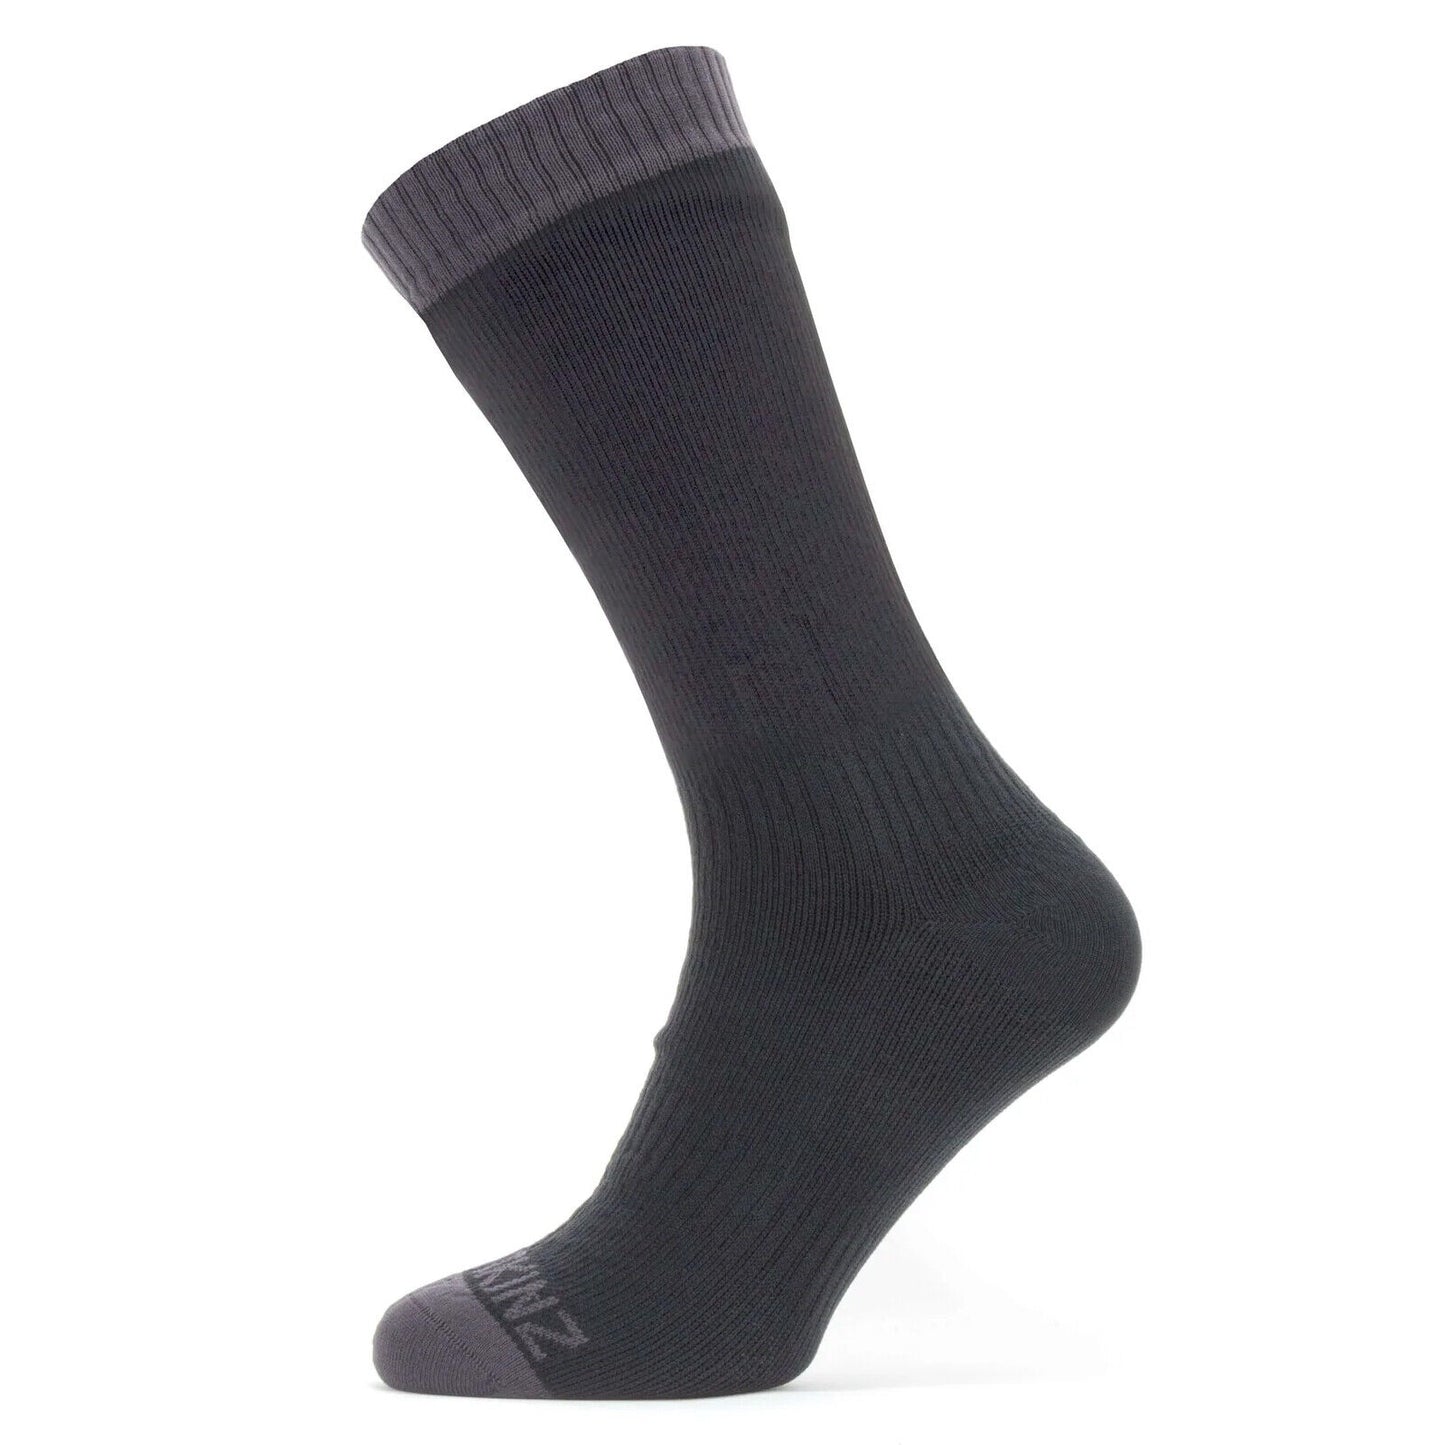 SealSkinz Waterproof Warm Weather Socks